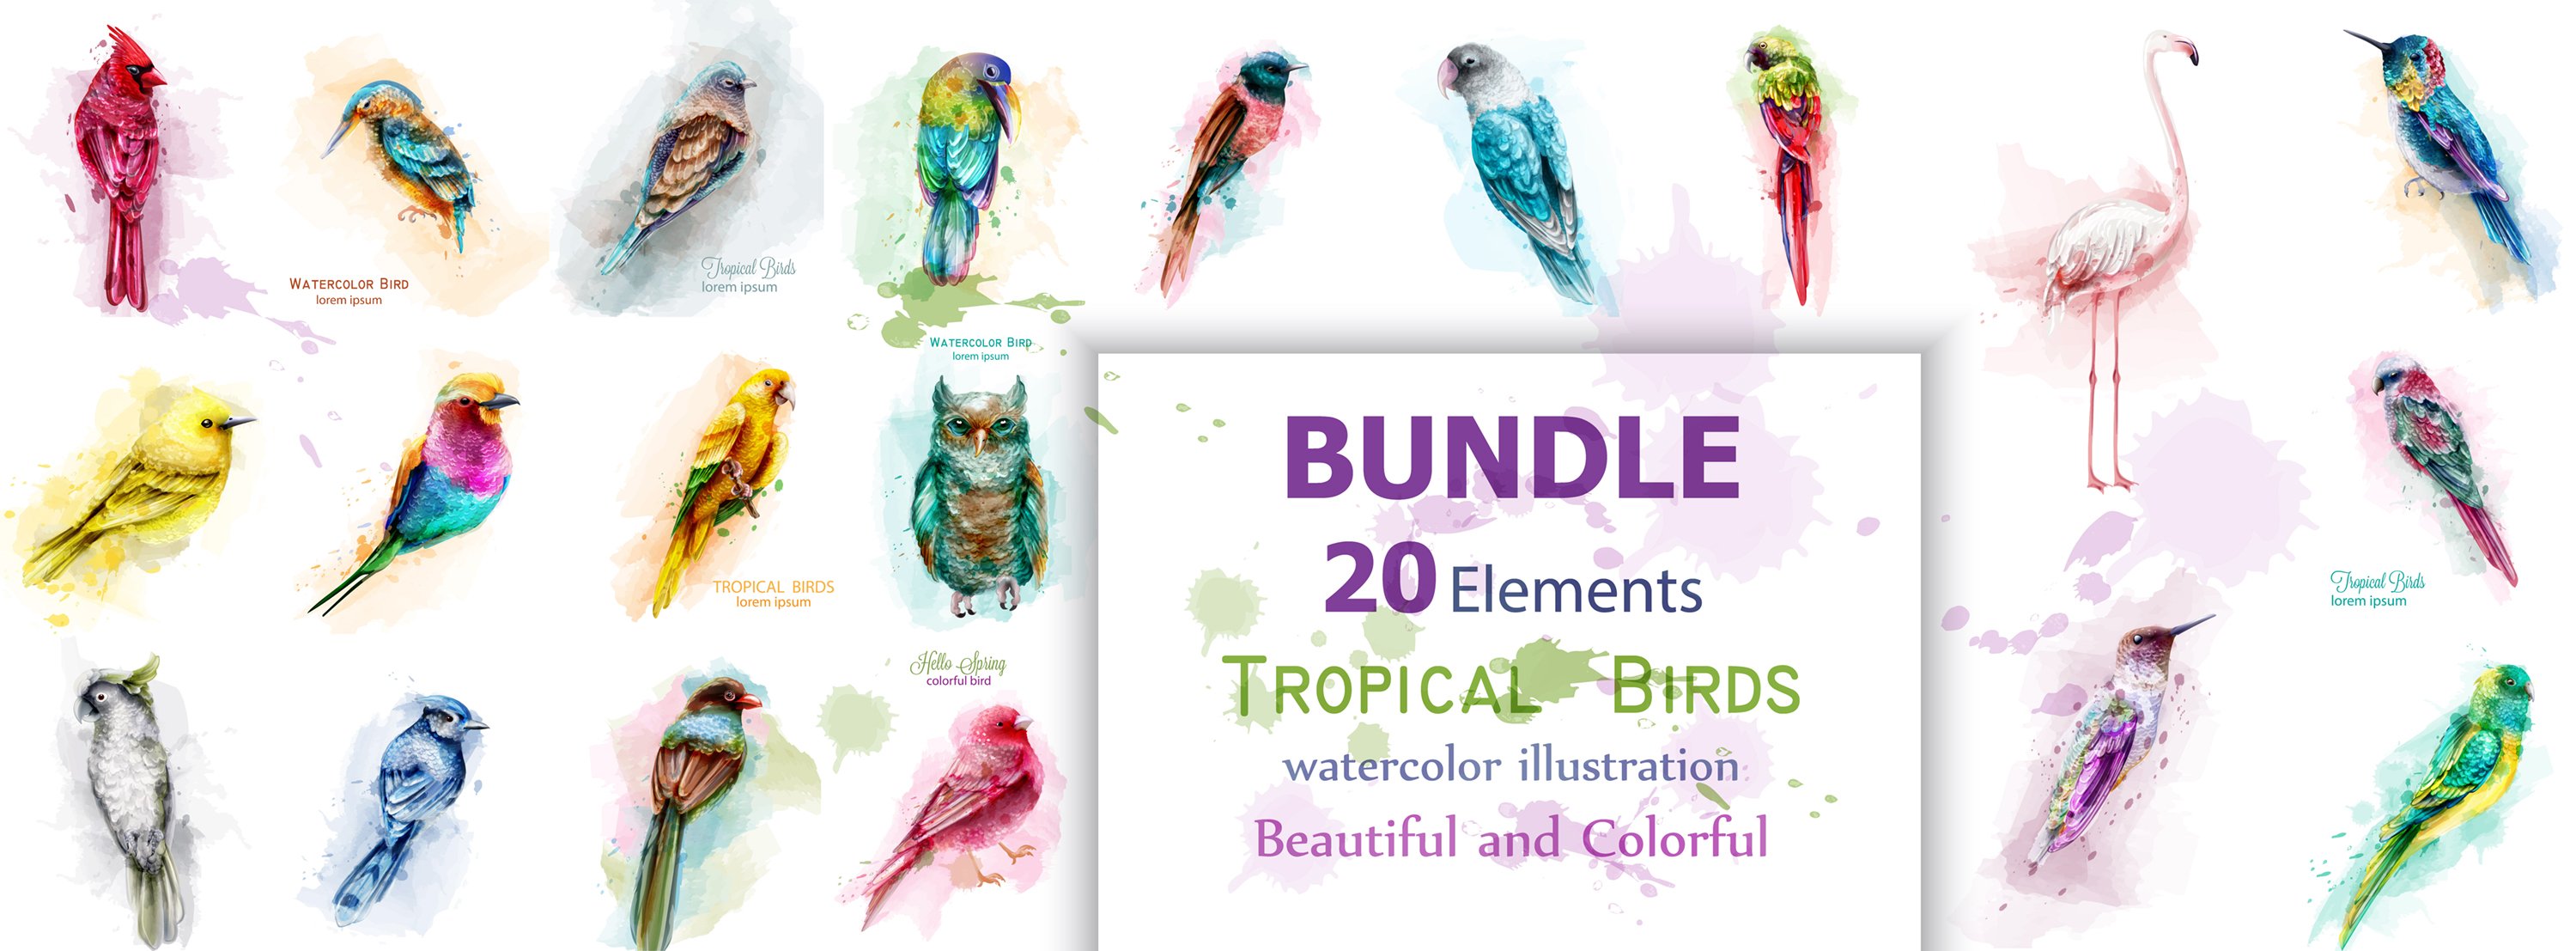 20 bundle watercolor birds cover image.